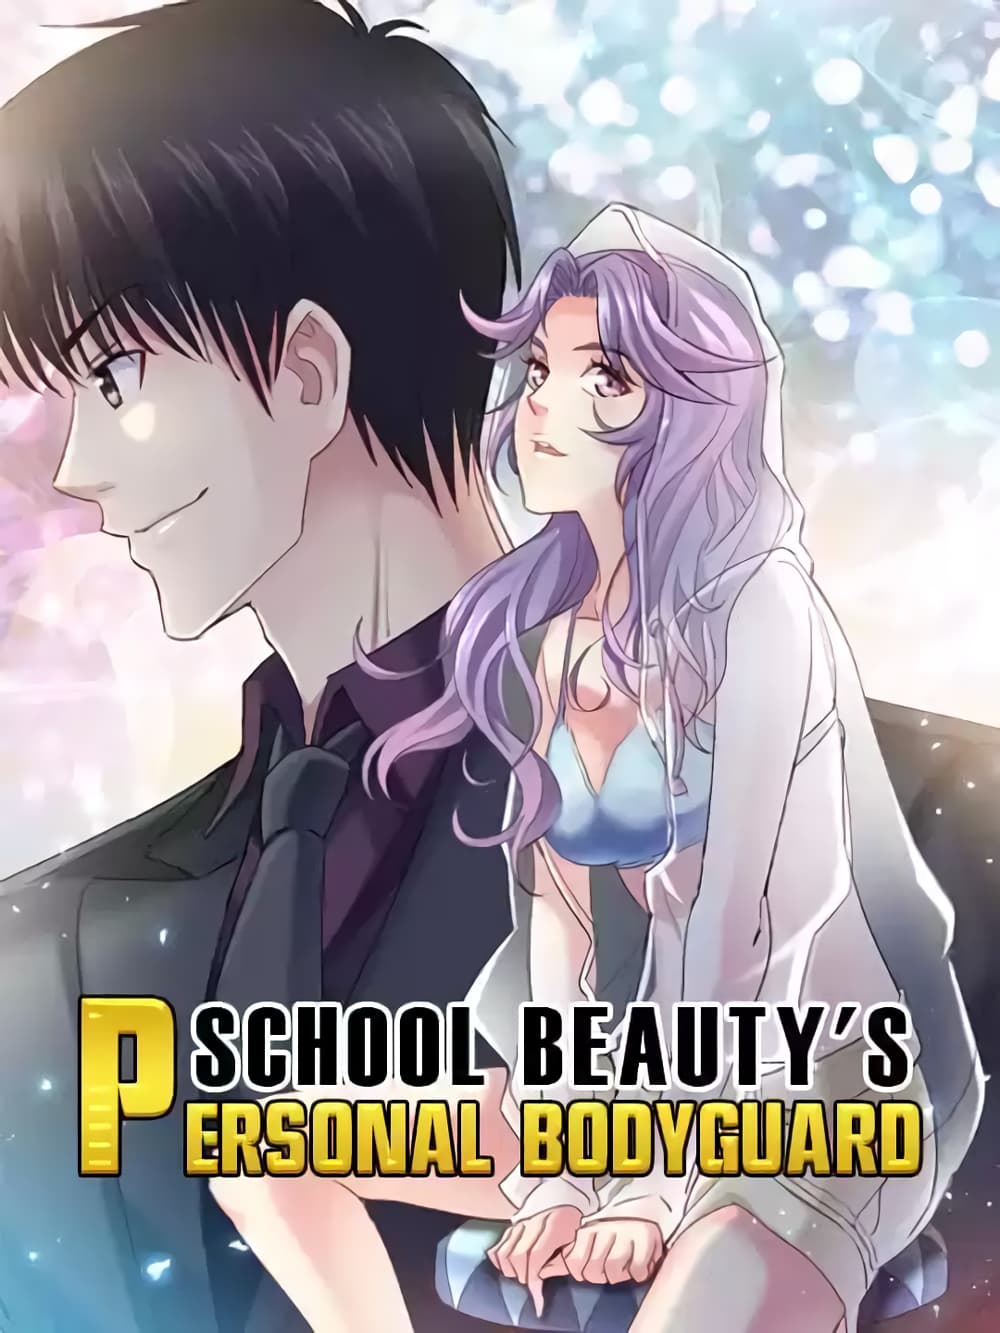 School Beauty's Bodyguard 297 (1)